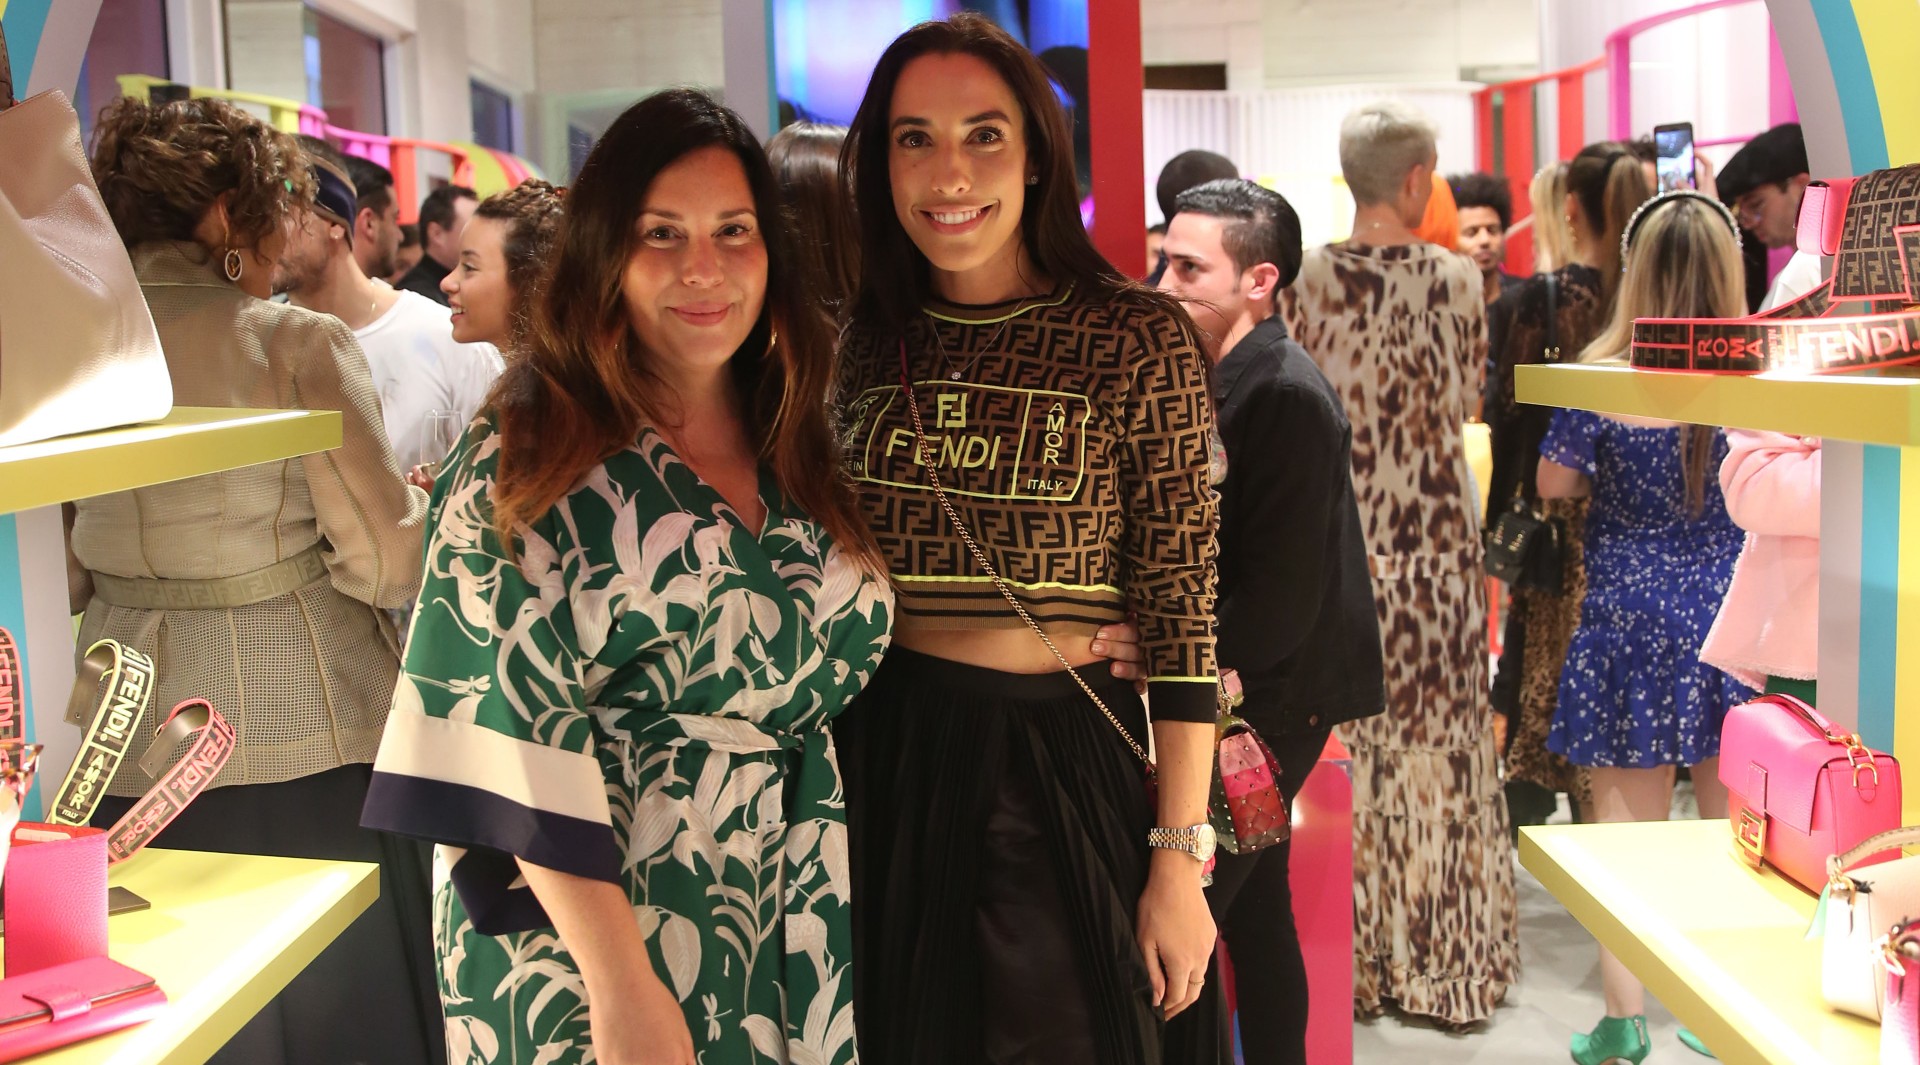 FENDI Roma Amor Capsule Collection Launch at FENDI's Miami Design